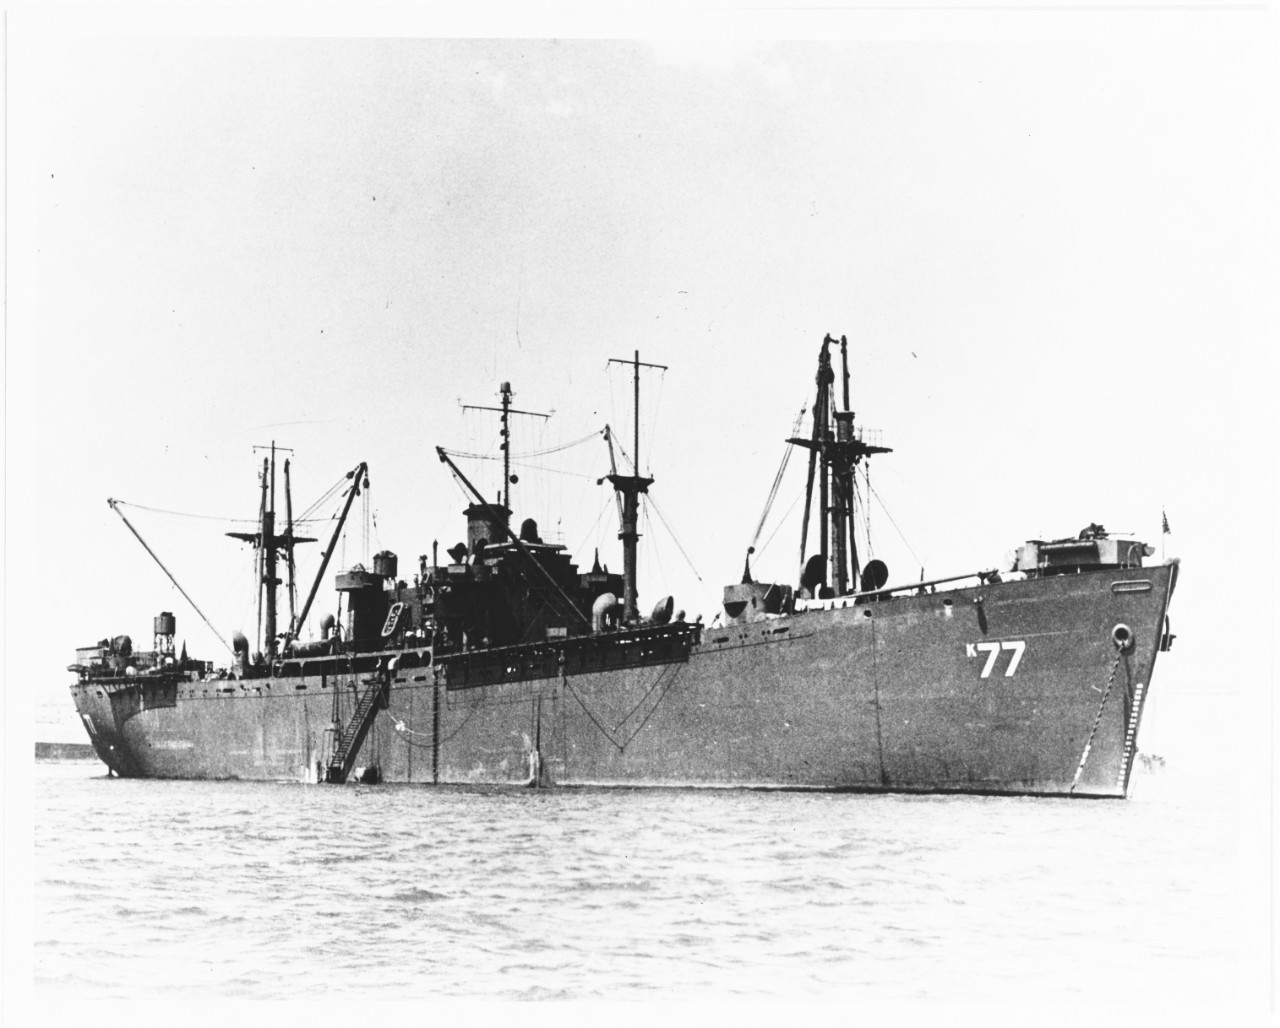 USS CETUS (AK-77)